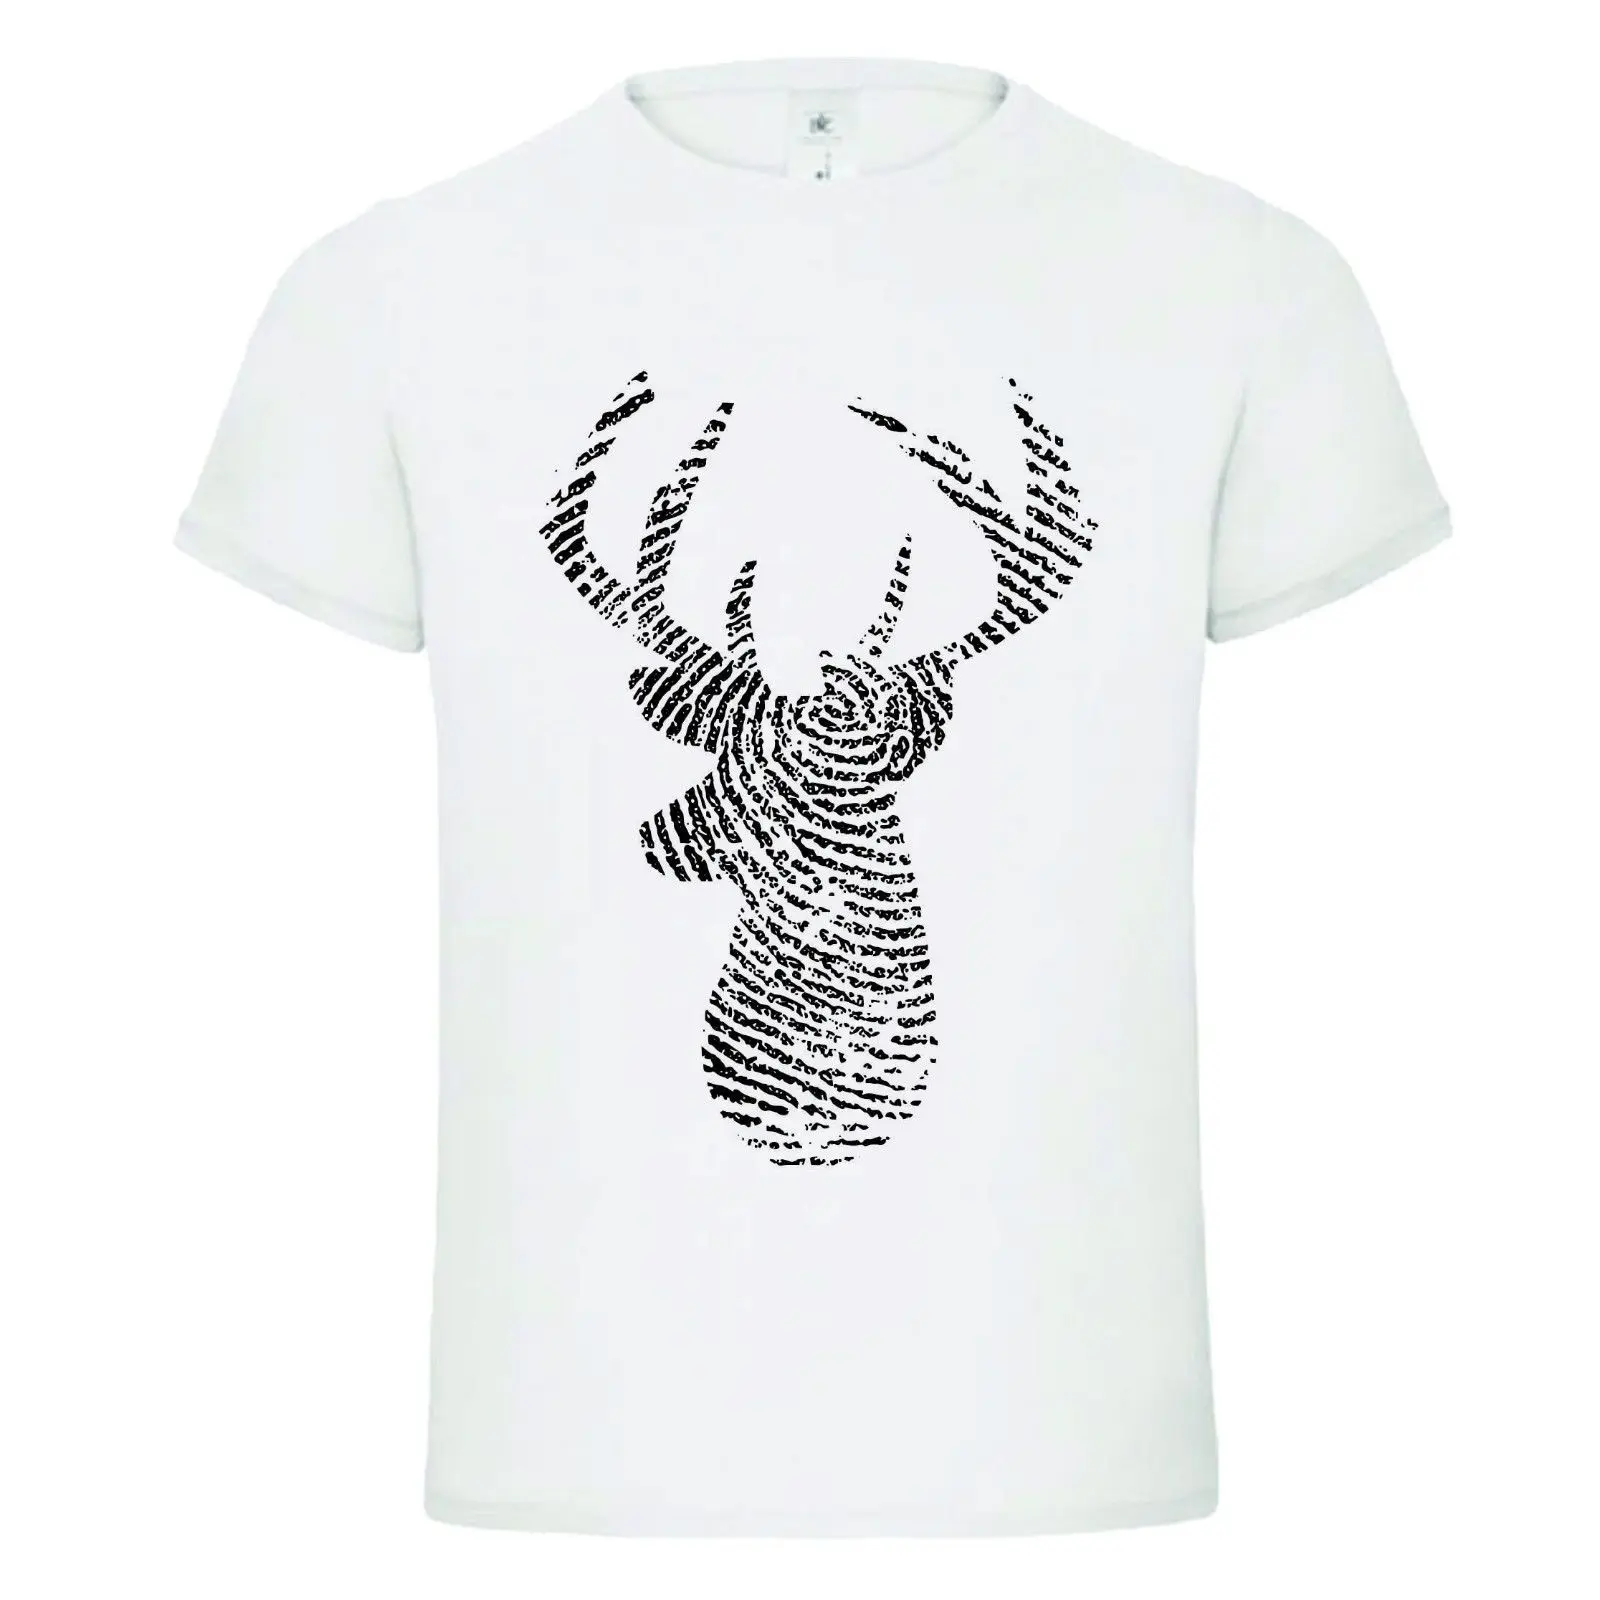 Коллаж тартан в форме оленя mashup dtg Для мужчин s футболка футболки Новый 2017 новые футболки, модные Стиль Для мужчин футболка 100% хлопок